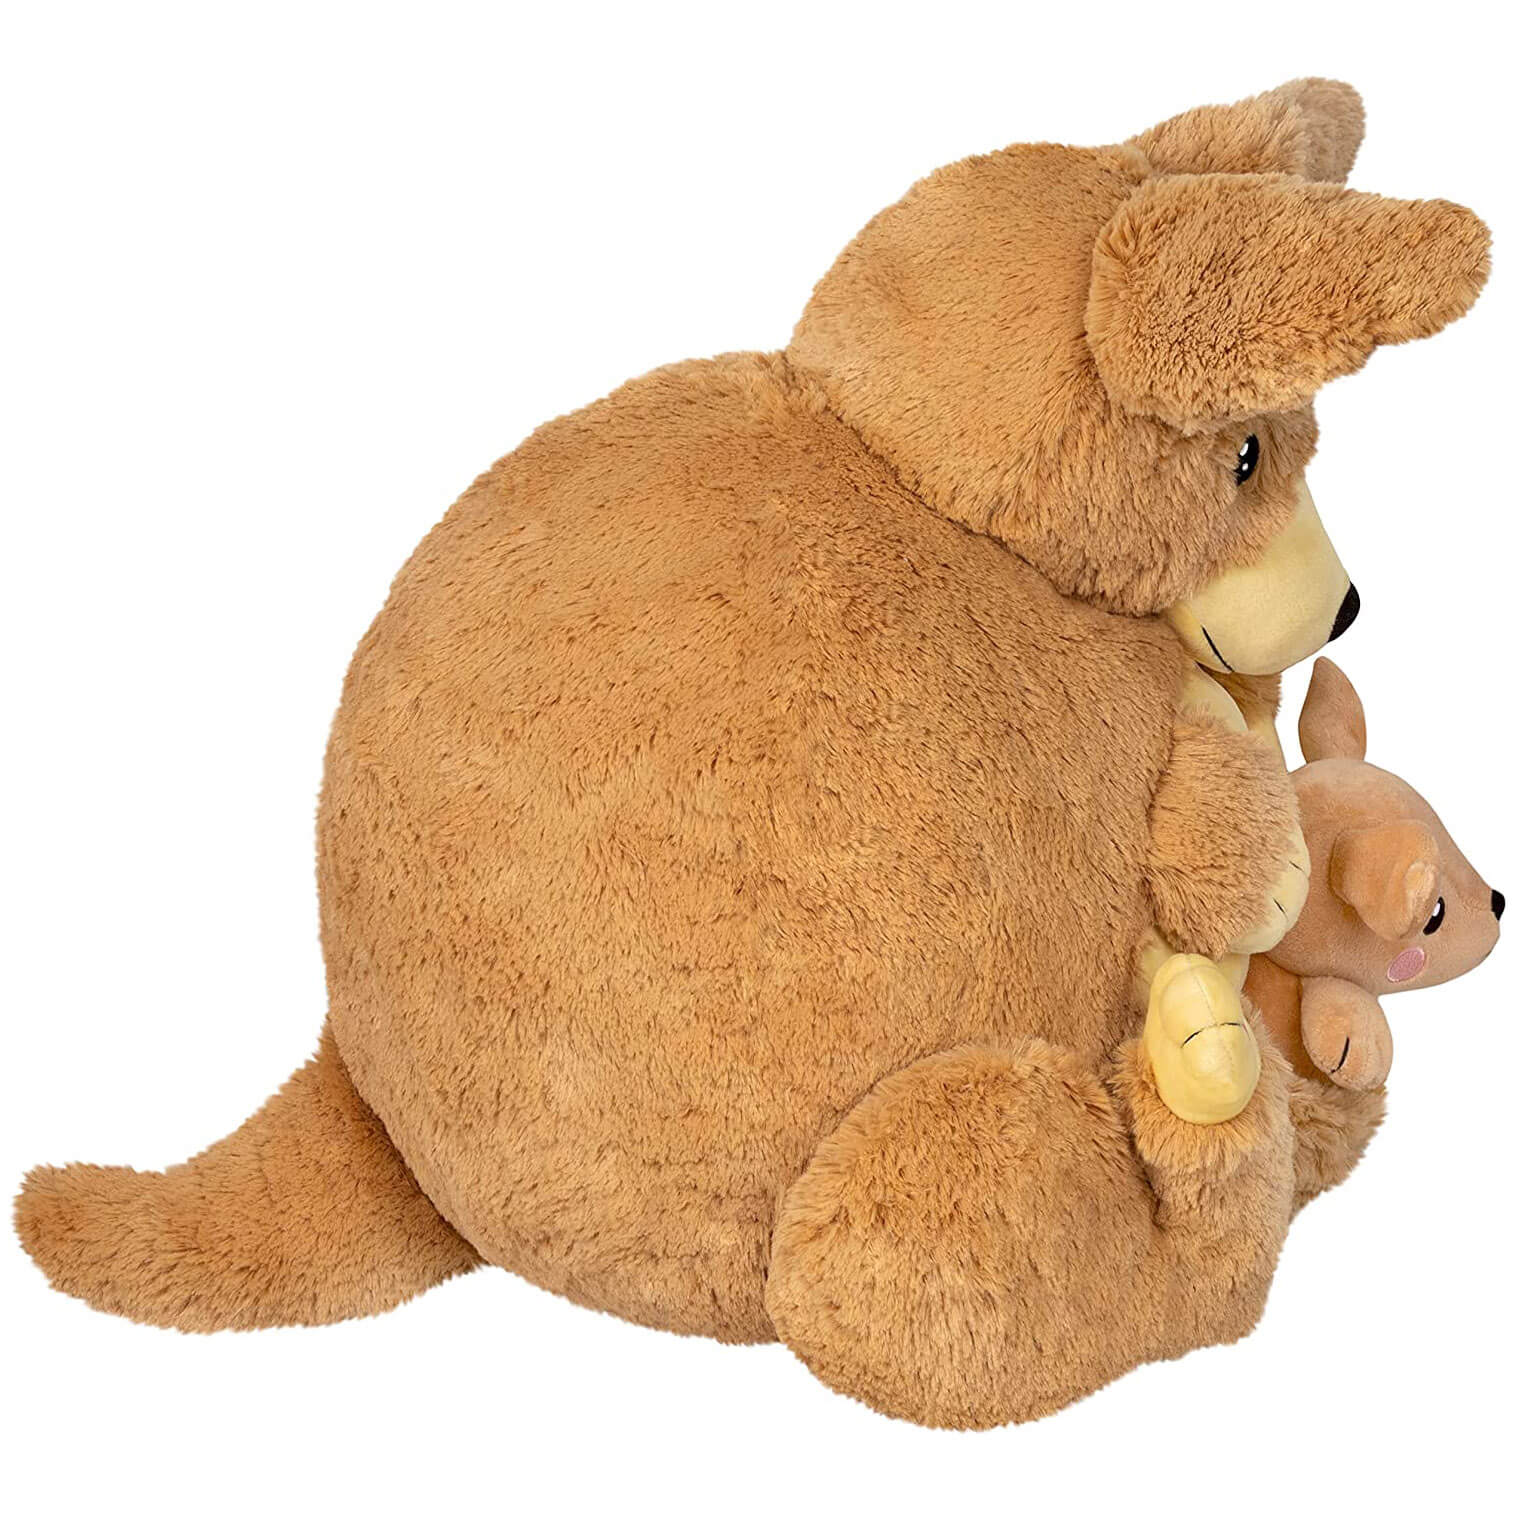 Squishable Cuddly Kangaroo Plush